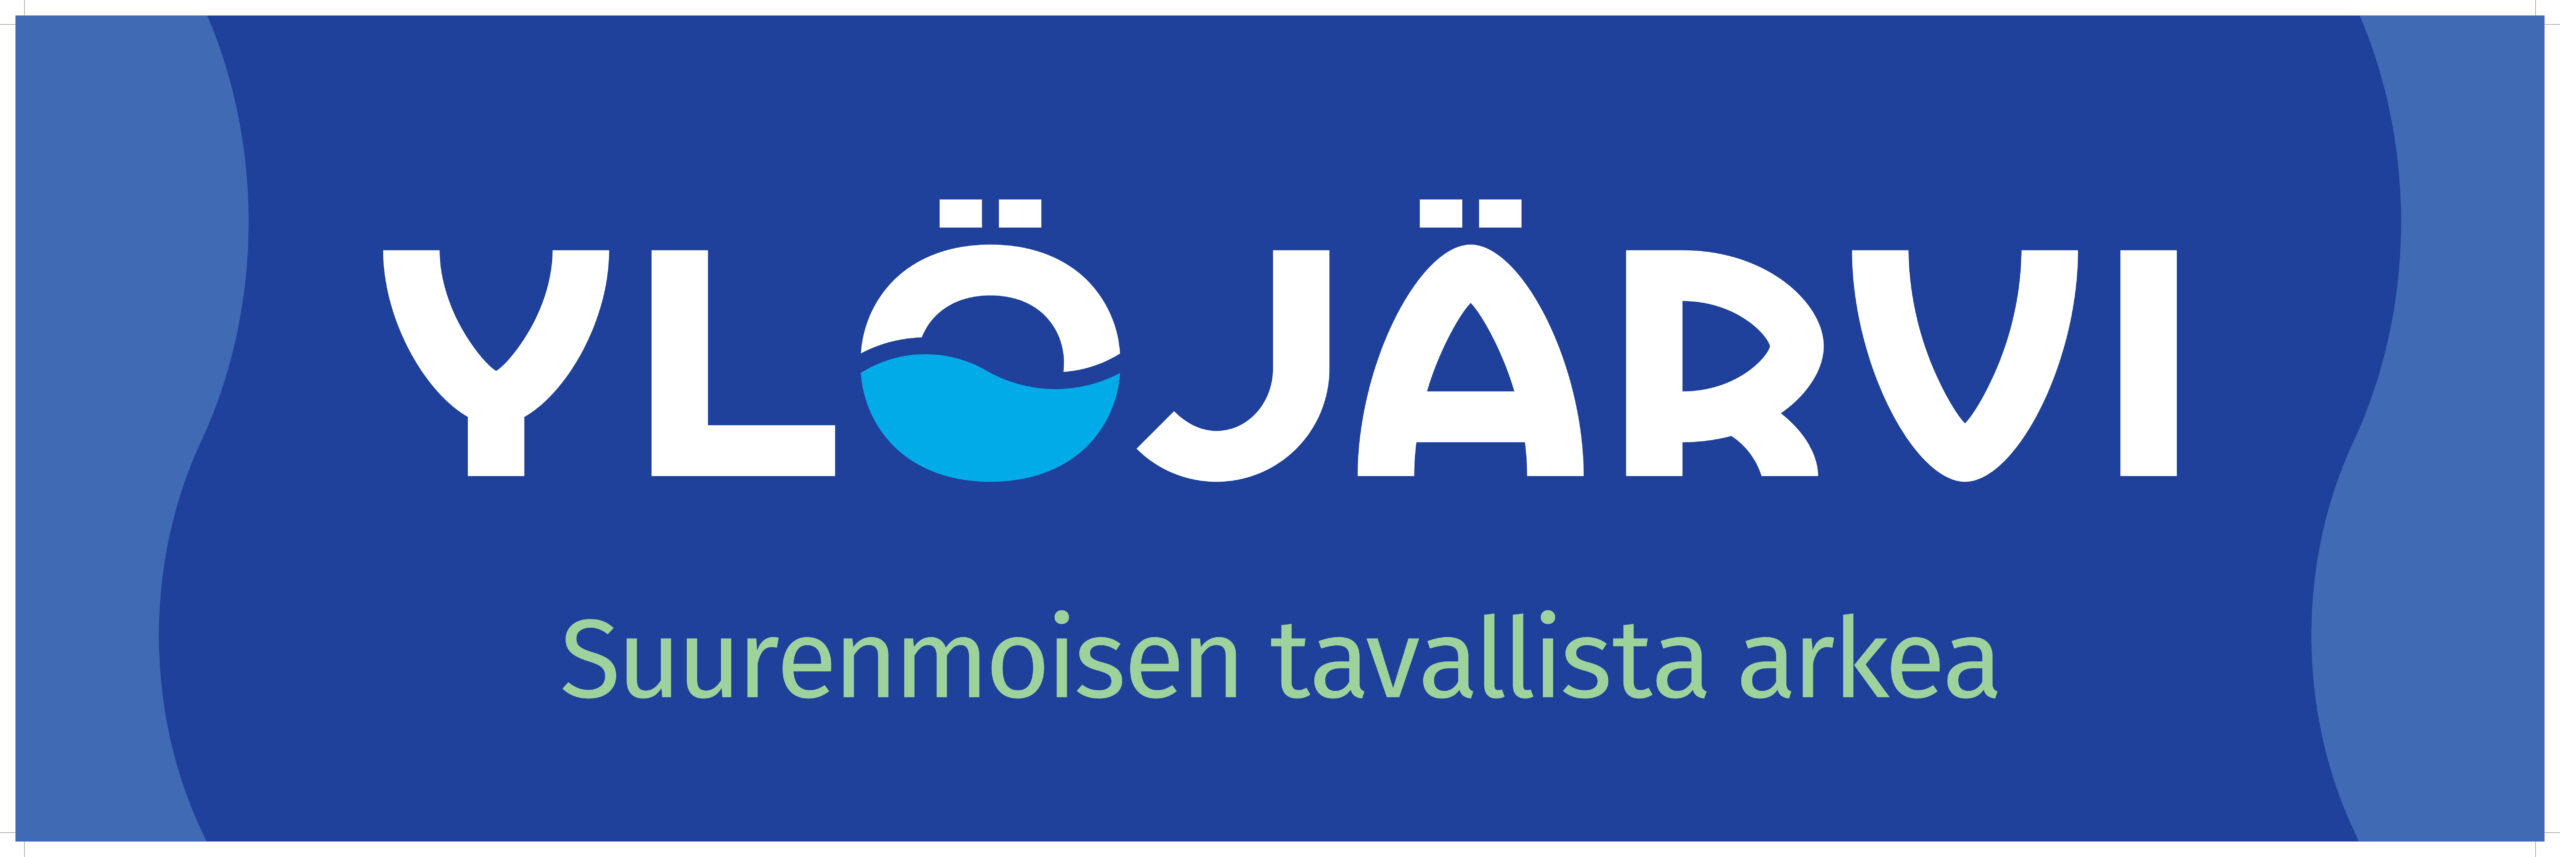 Ylöjärvi-logo, jonka alla lukee suurenmoisen tavallista arkea.